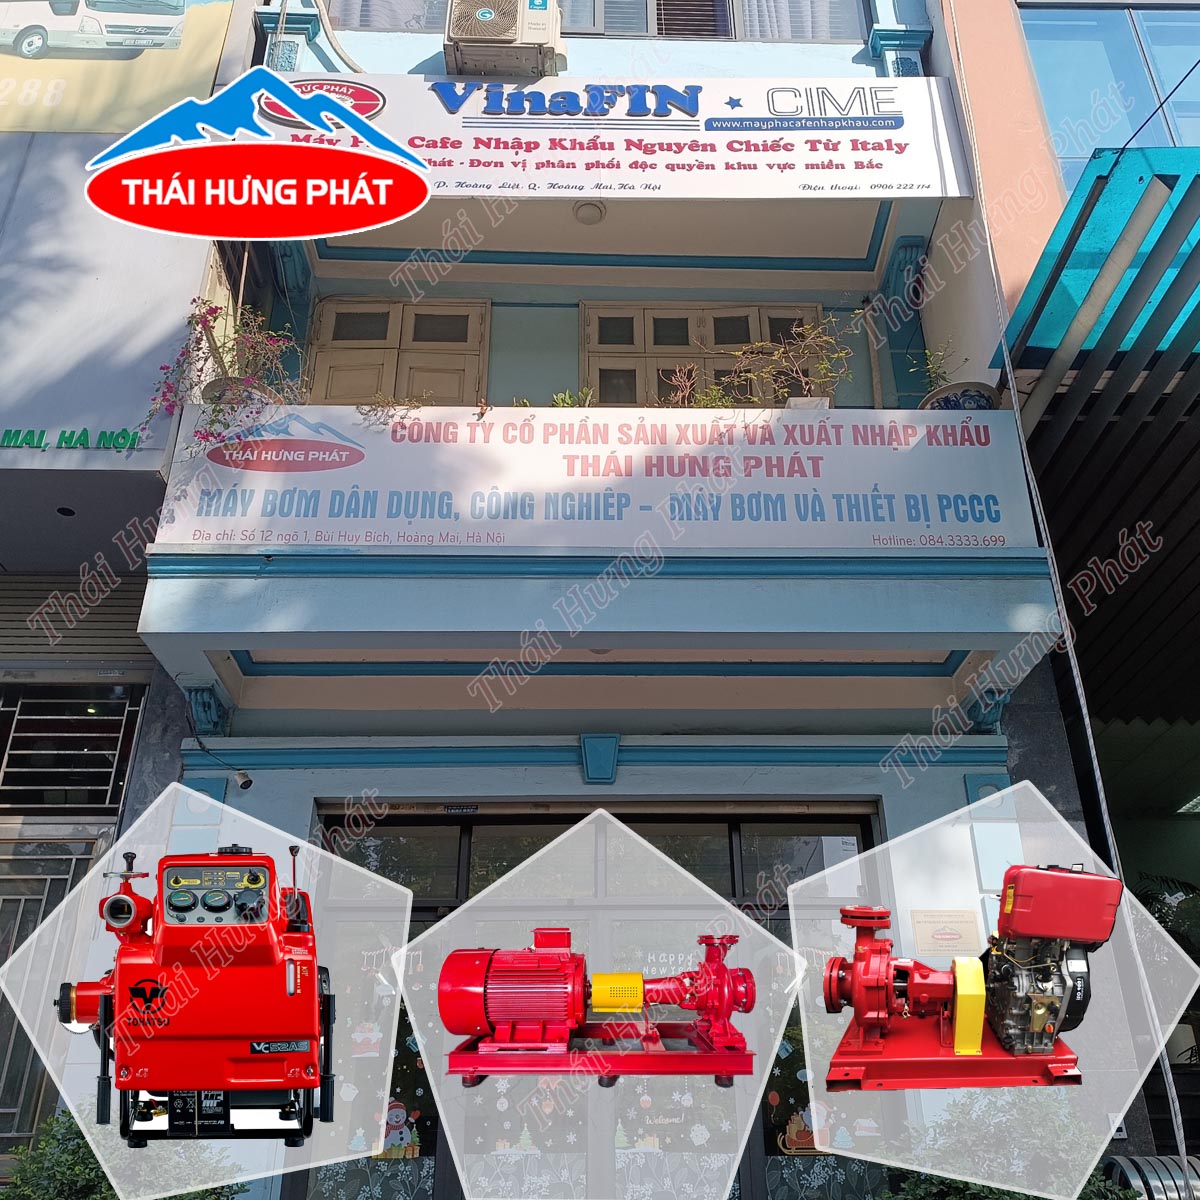 Công ty sản xuất máy bơm chữa cháy uy tín nhất tại Việt Nam